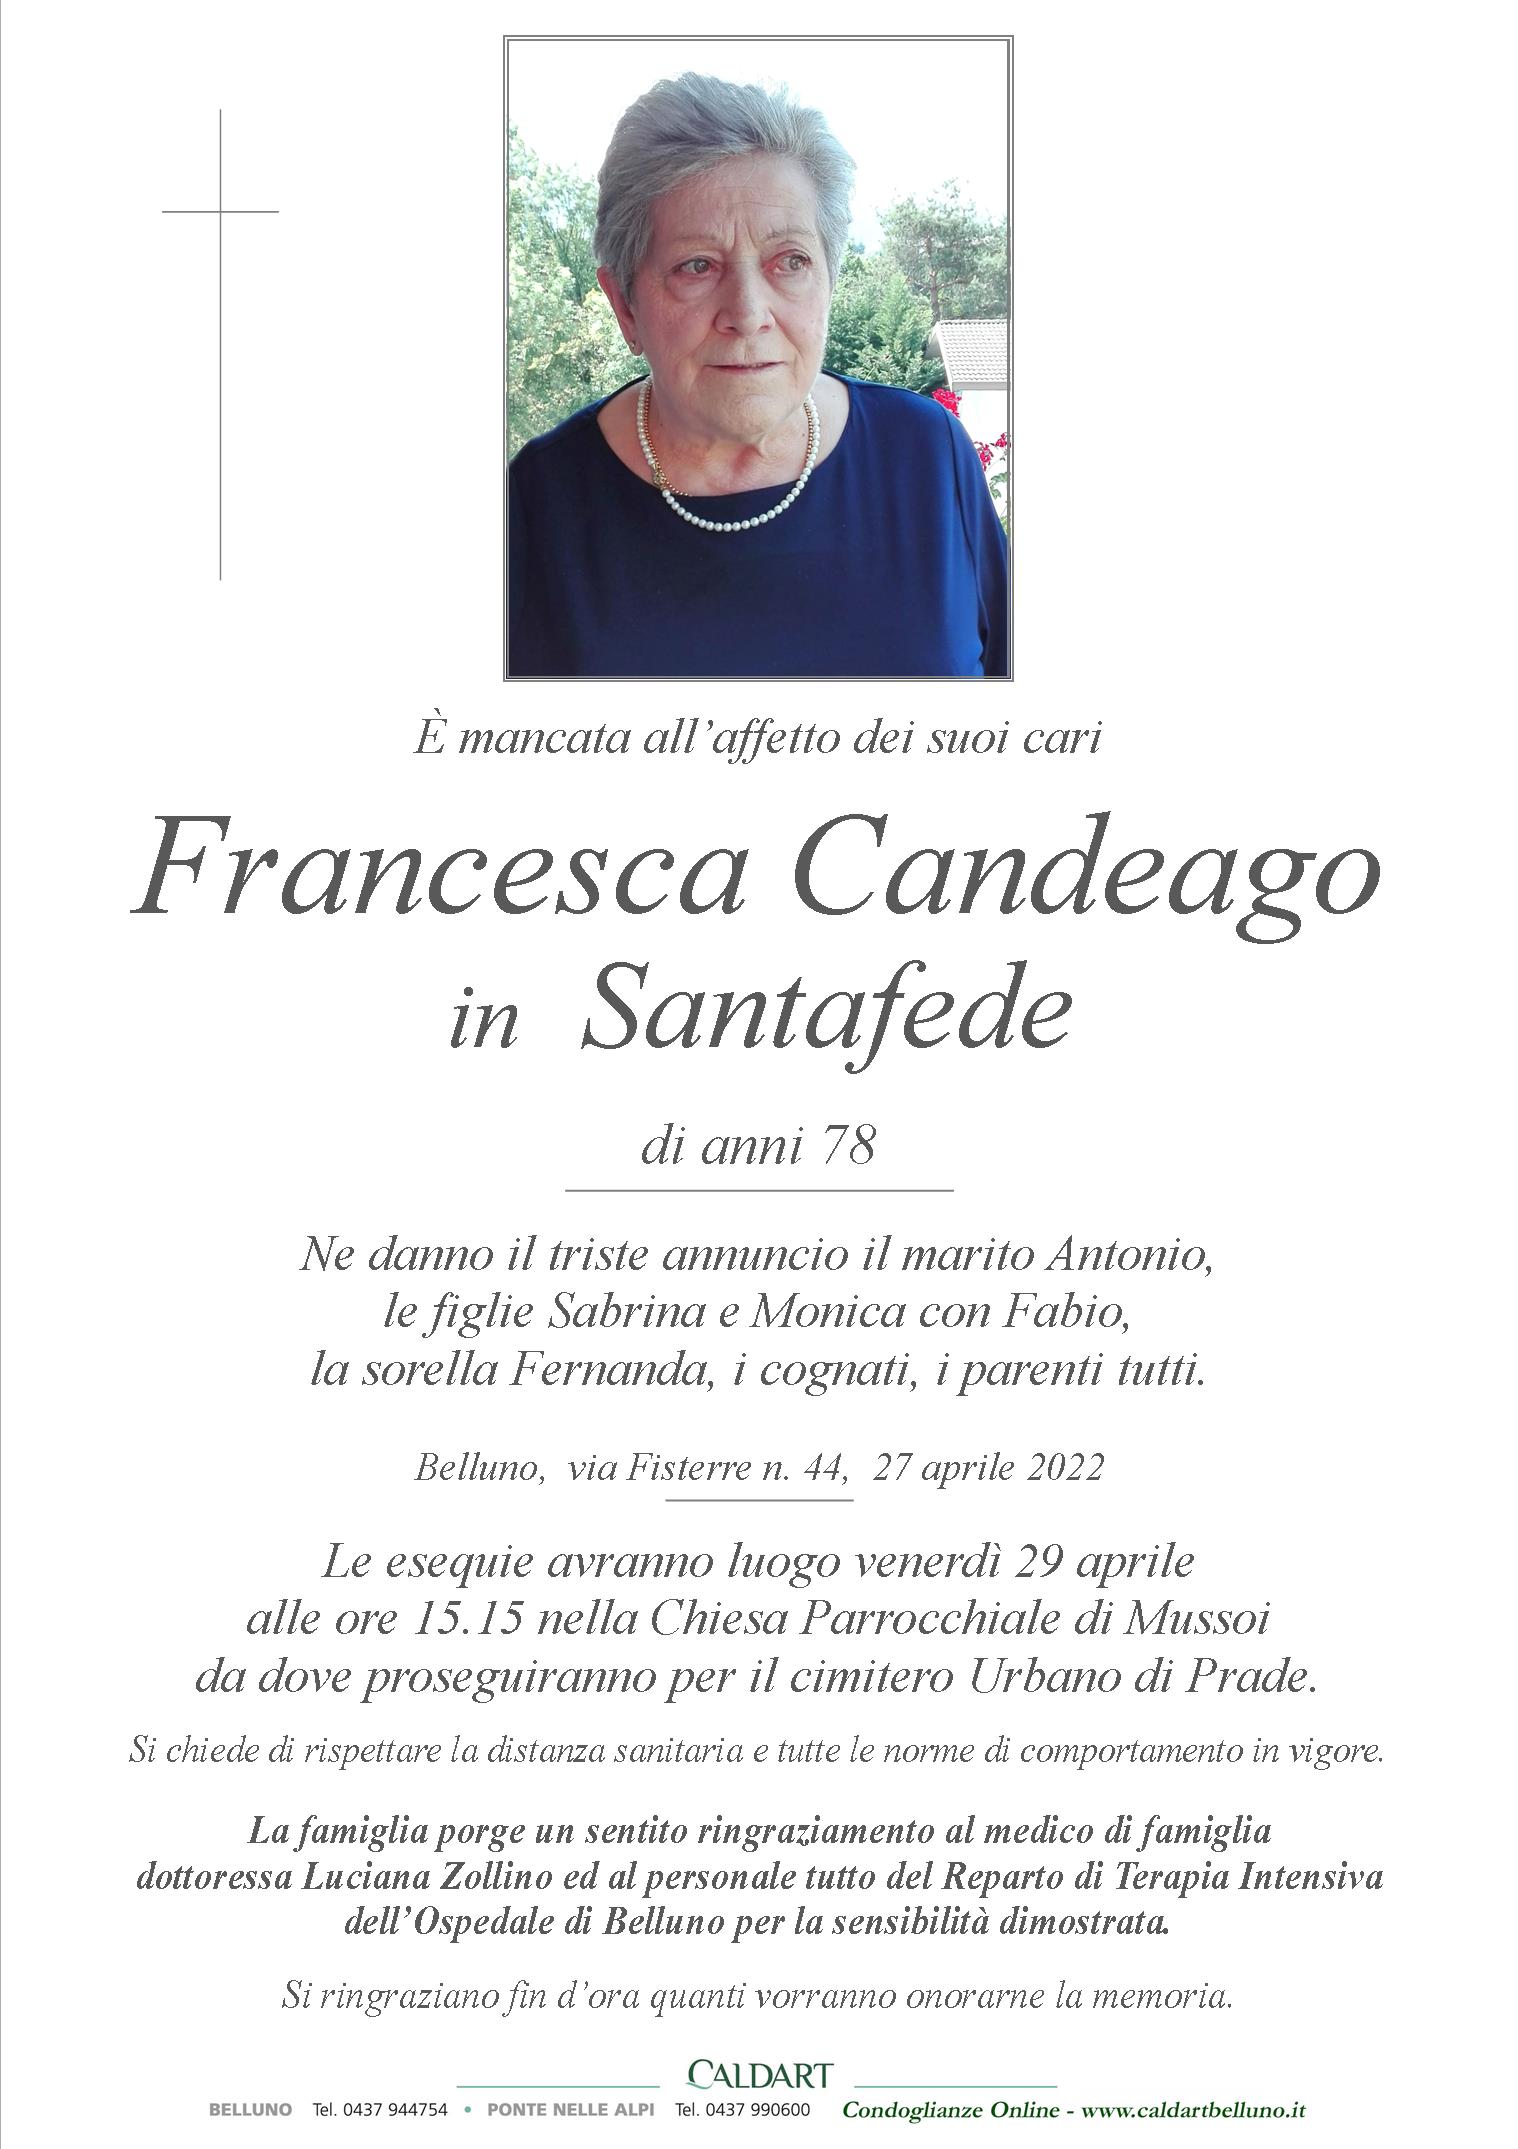 Candeago Francesca